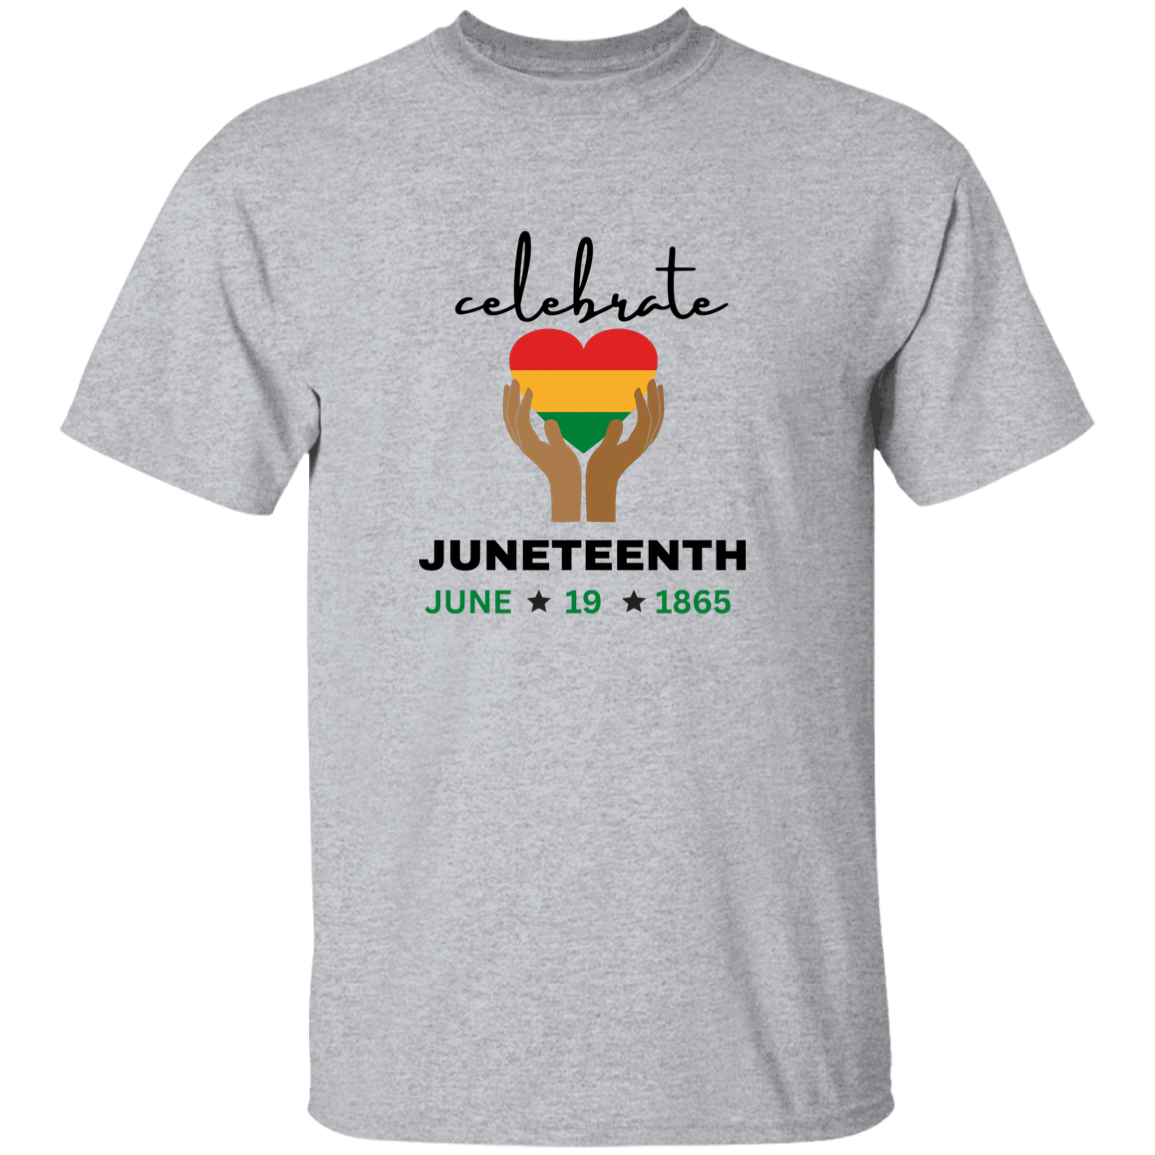 Juneteenth | T-Shirt | Heart in Hand